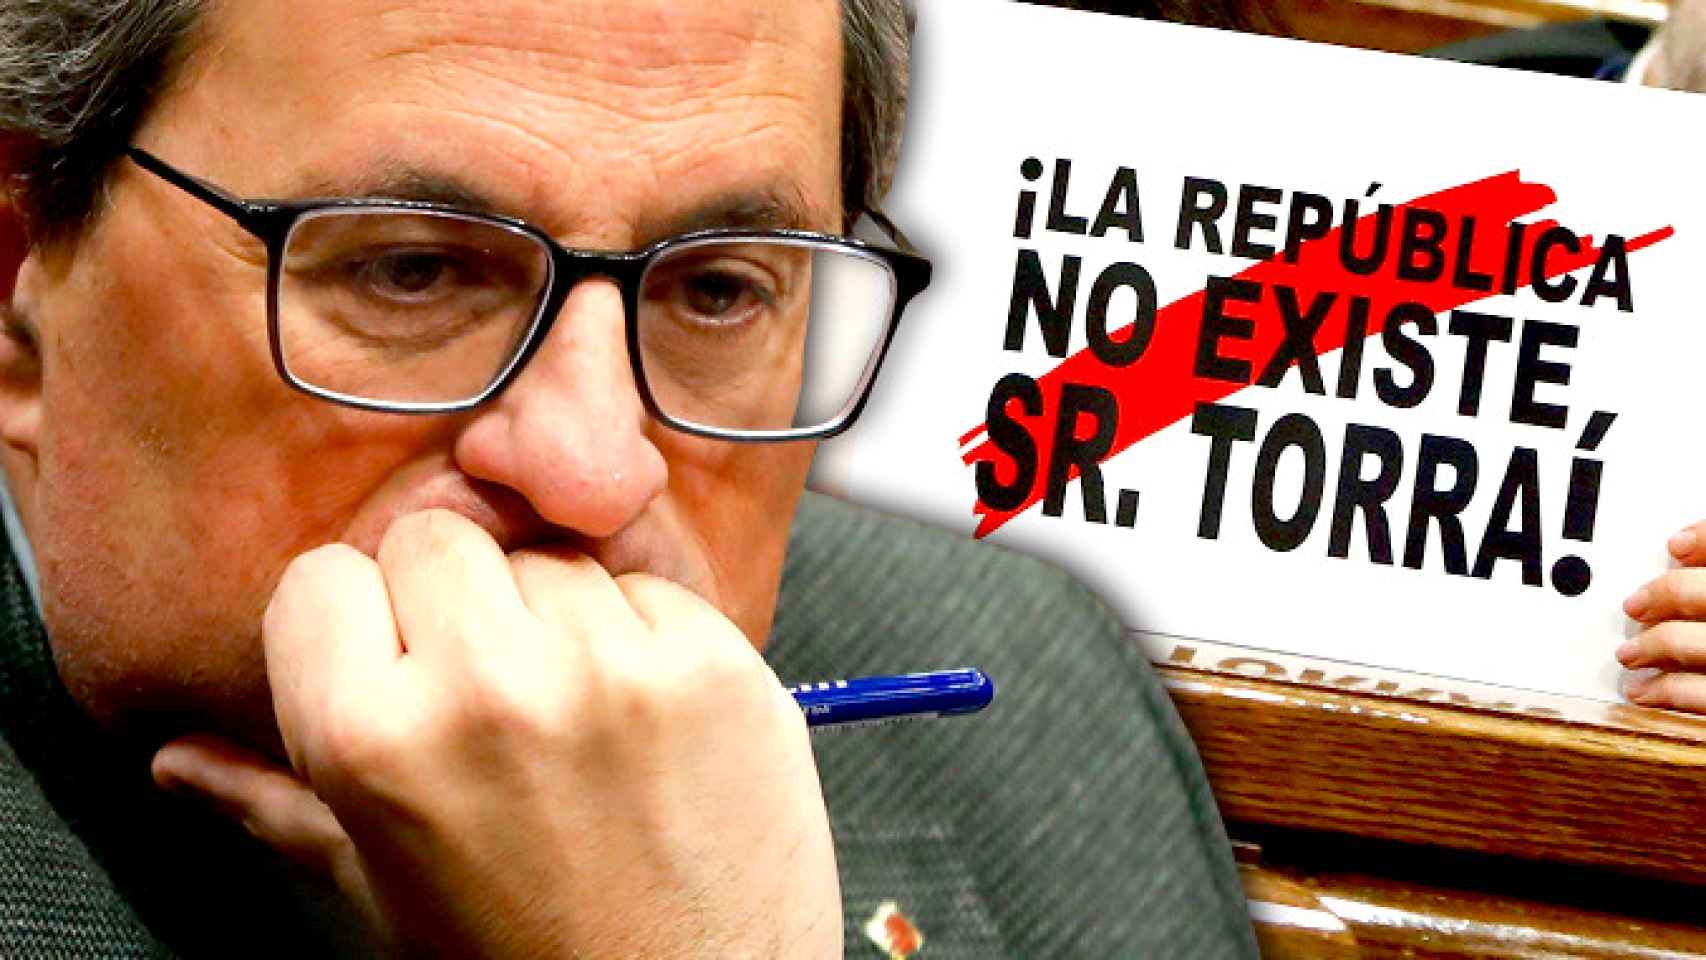 El presidente de la Generalitat, Quim Torra, con el cartel '¡La república no existe, Sr. Torra!' / FOTOMONTAJE CG